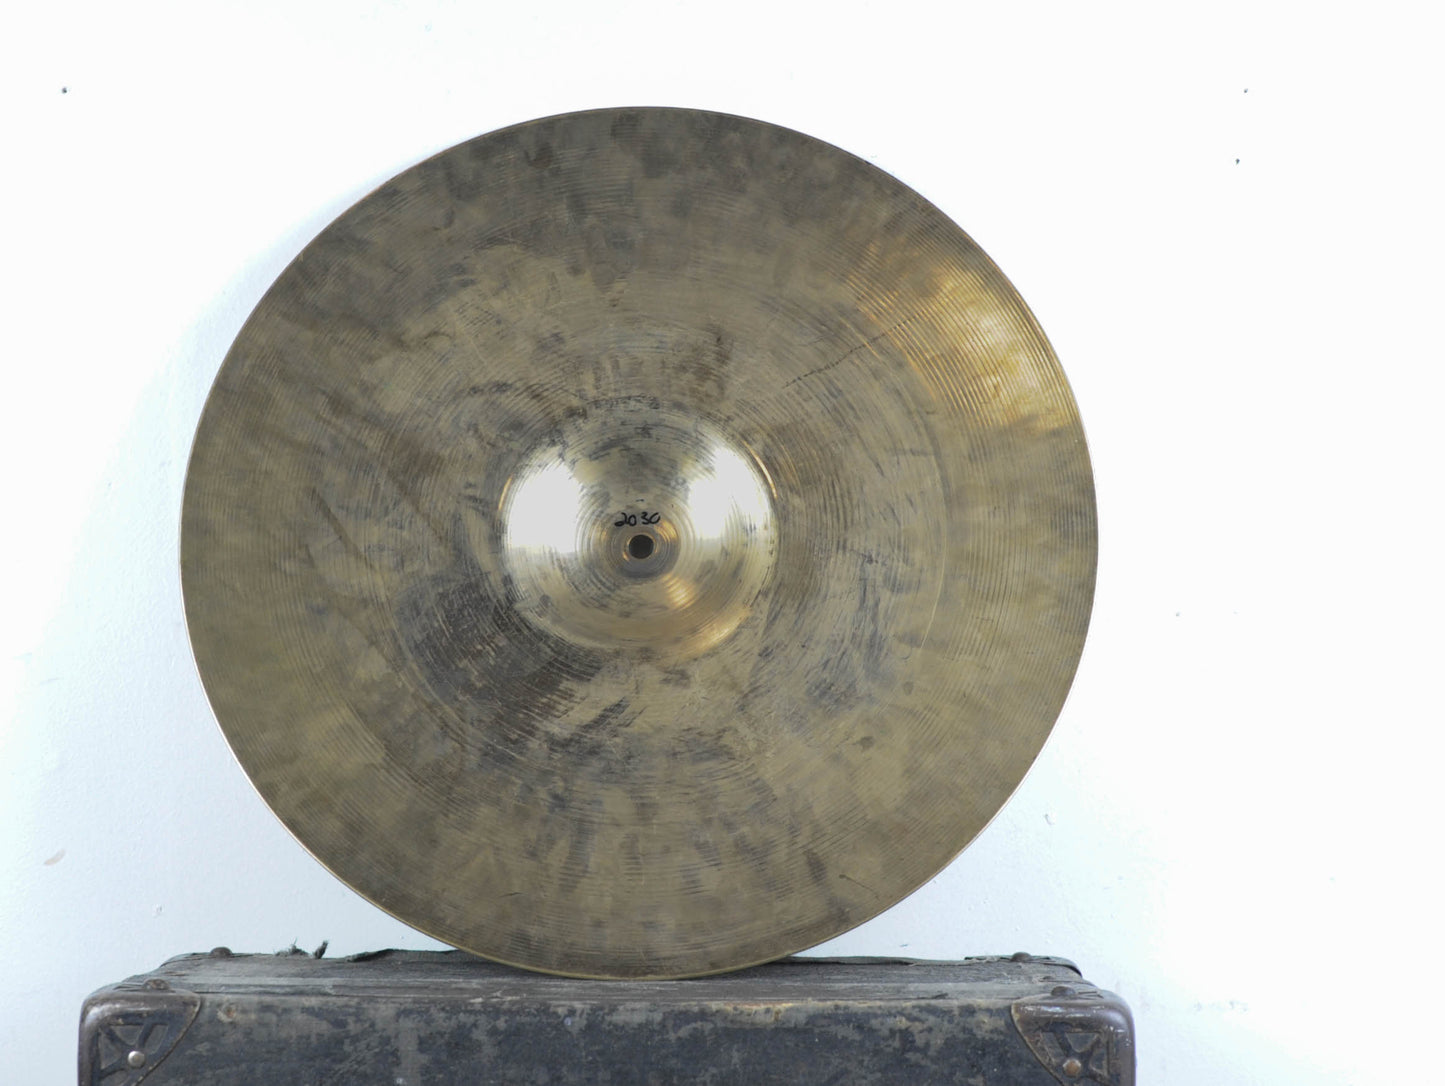 1960s Zildjian 18" Ride Cymbal 2030g